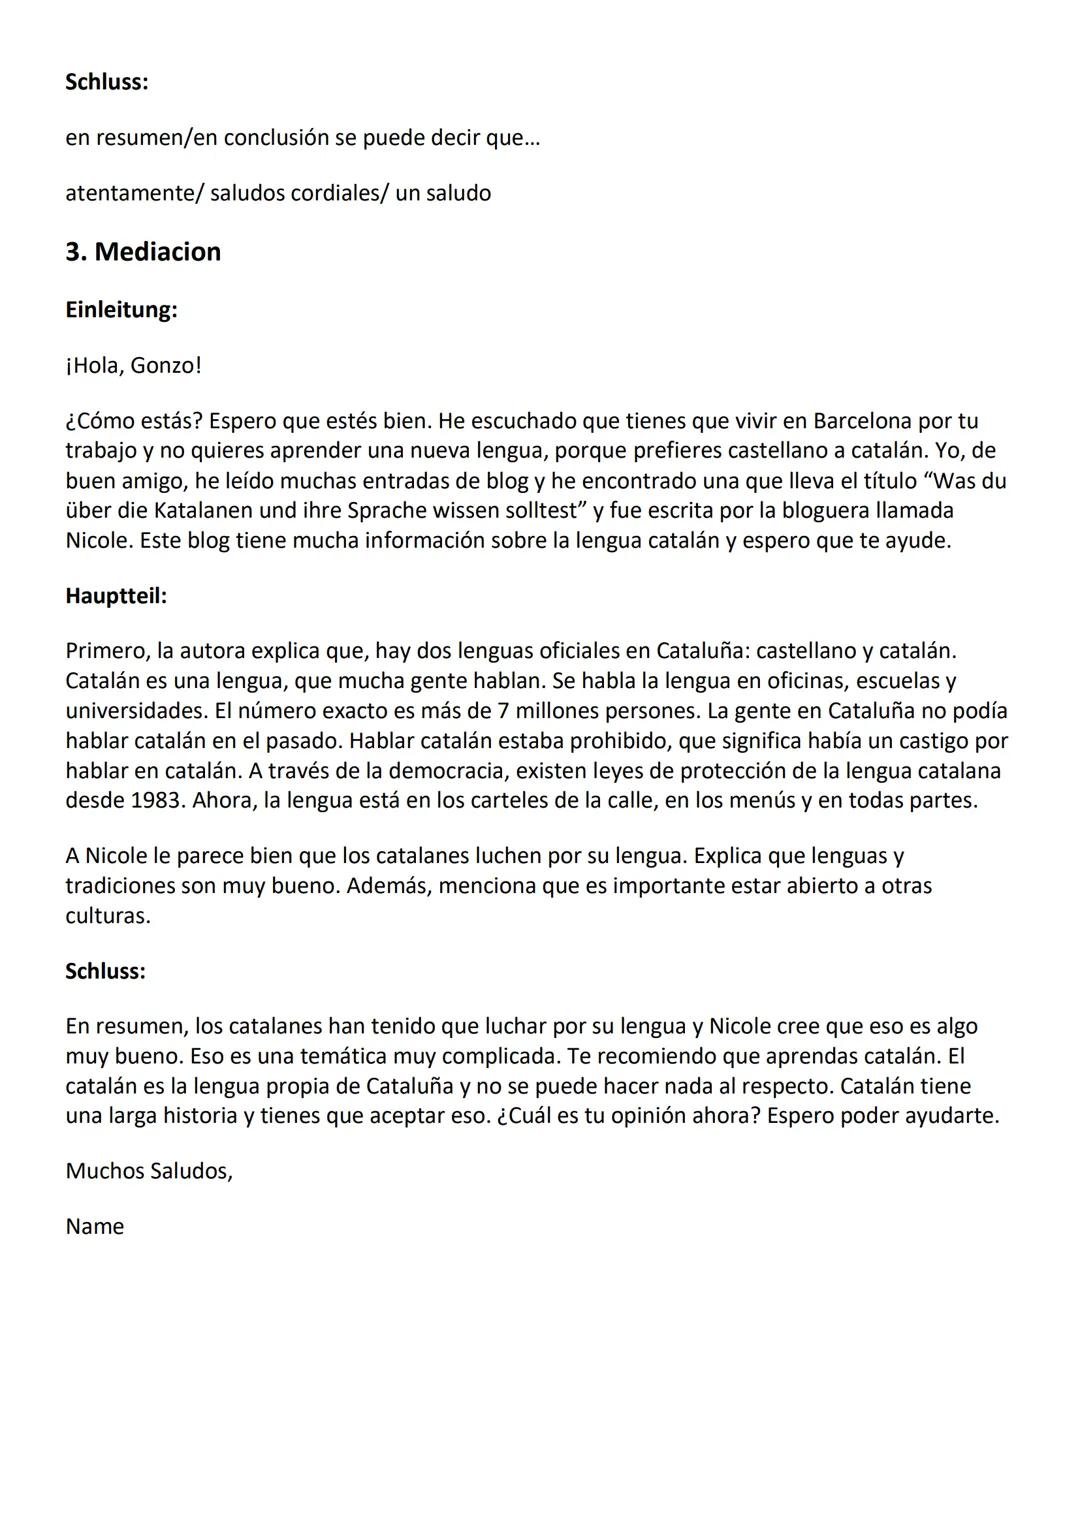 Spanisch - Resumen, Commentario, Mediacion
1.) Resumen
Einleitung: El texto/articulo ,,Text" escrito por un autor desconocido y publicado en